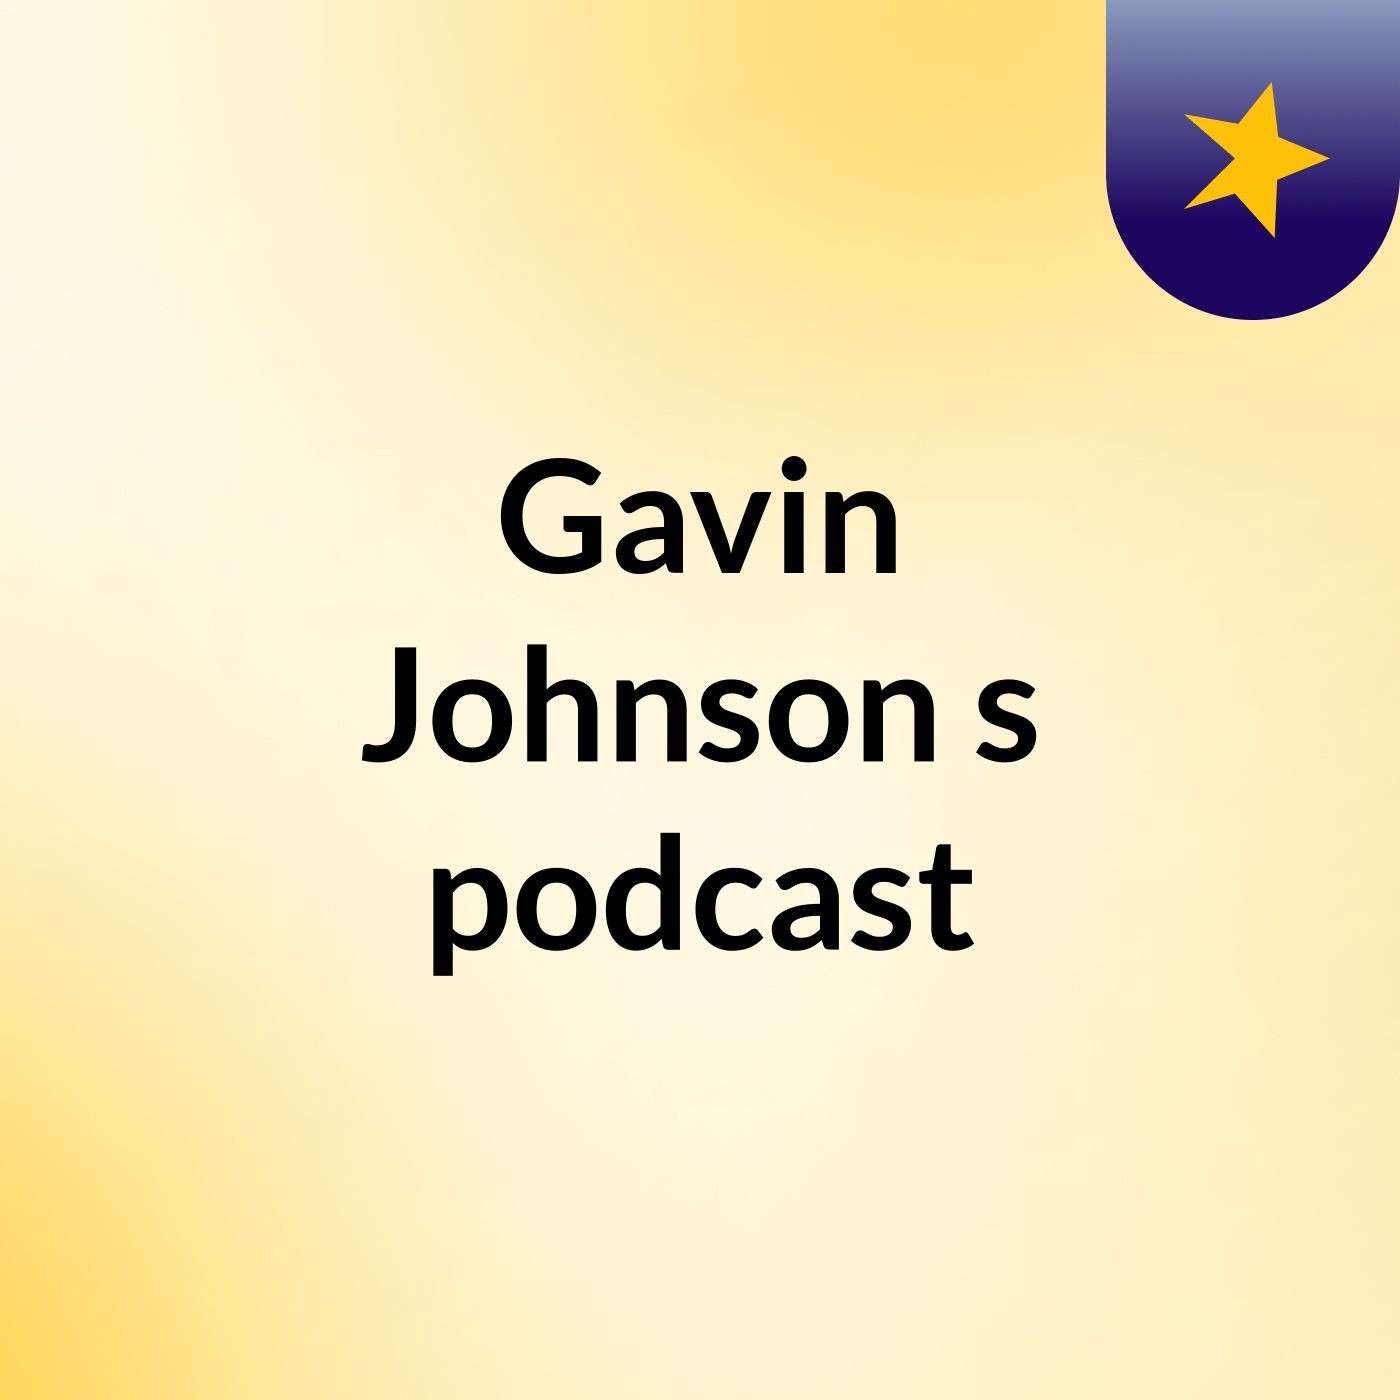 Episode 2 - Gavin Johnson's podcast